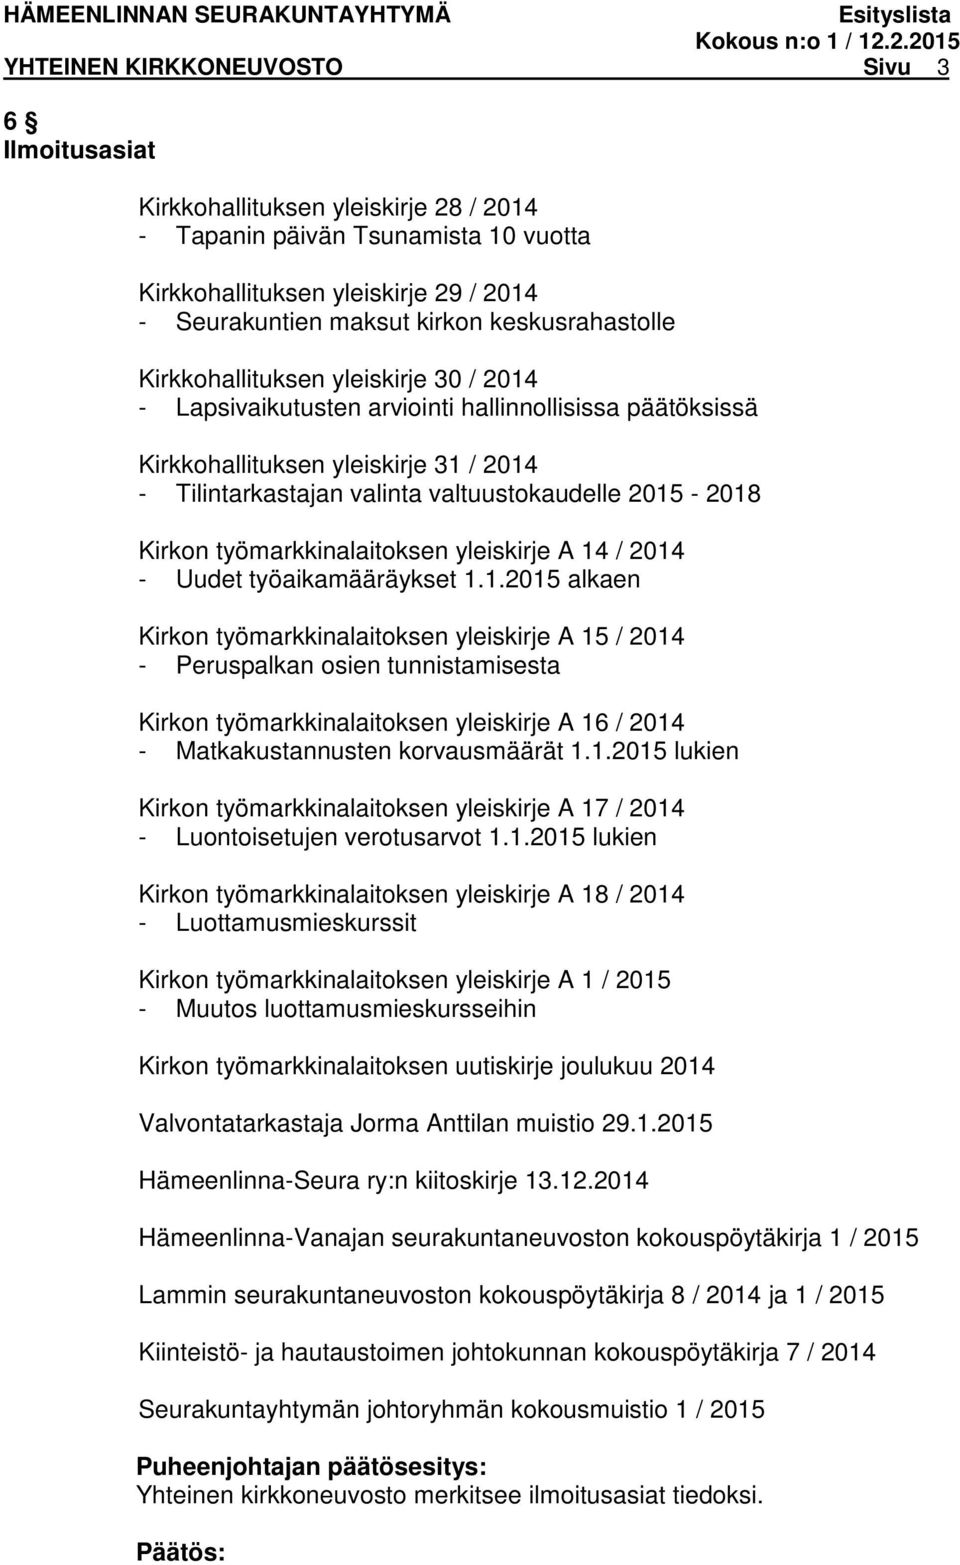 2015-2018 Kirkon työmarkkinalaitoksen yleiskirje A 14 / 2014 - Uudet työaikamääräykset 1.1.2015 alkaen Kirkon työmarkkinalaitoksen yleiskirje A 15 / 2014 - Peruspalkan osien tunnistamisesta Kirkon työmarkkinalaitoksen yleiskirje A 16 / 2014 - Matkakustannusten korvausmäärät 1.